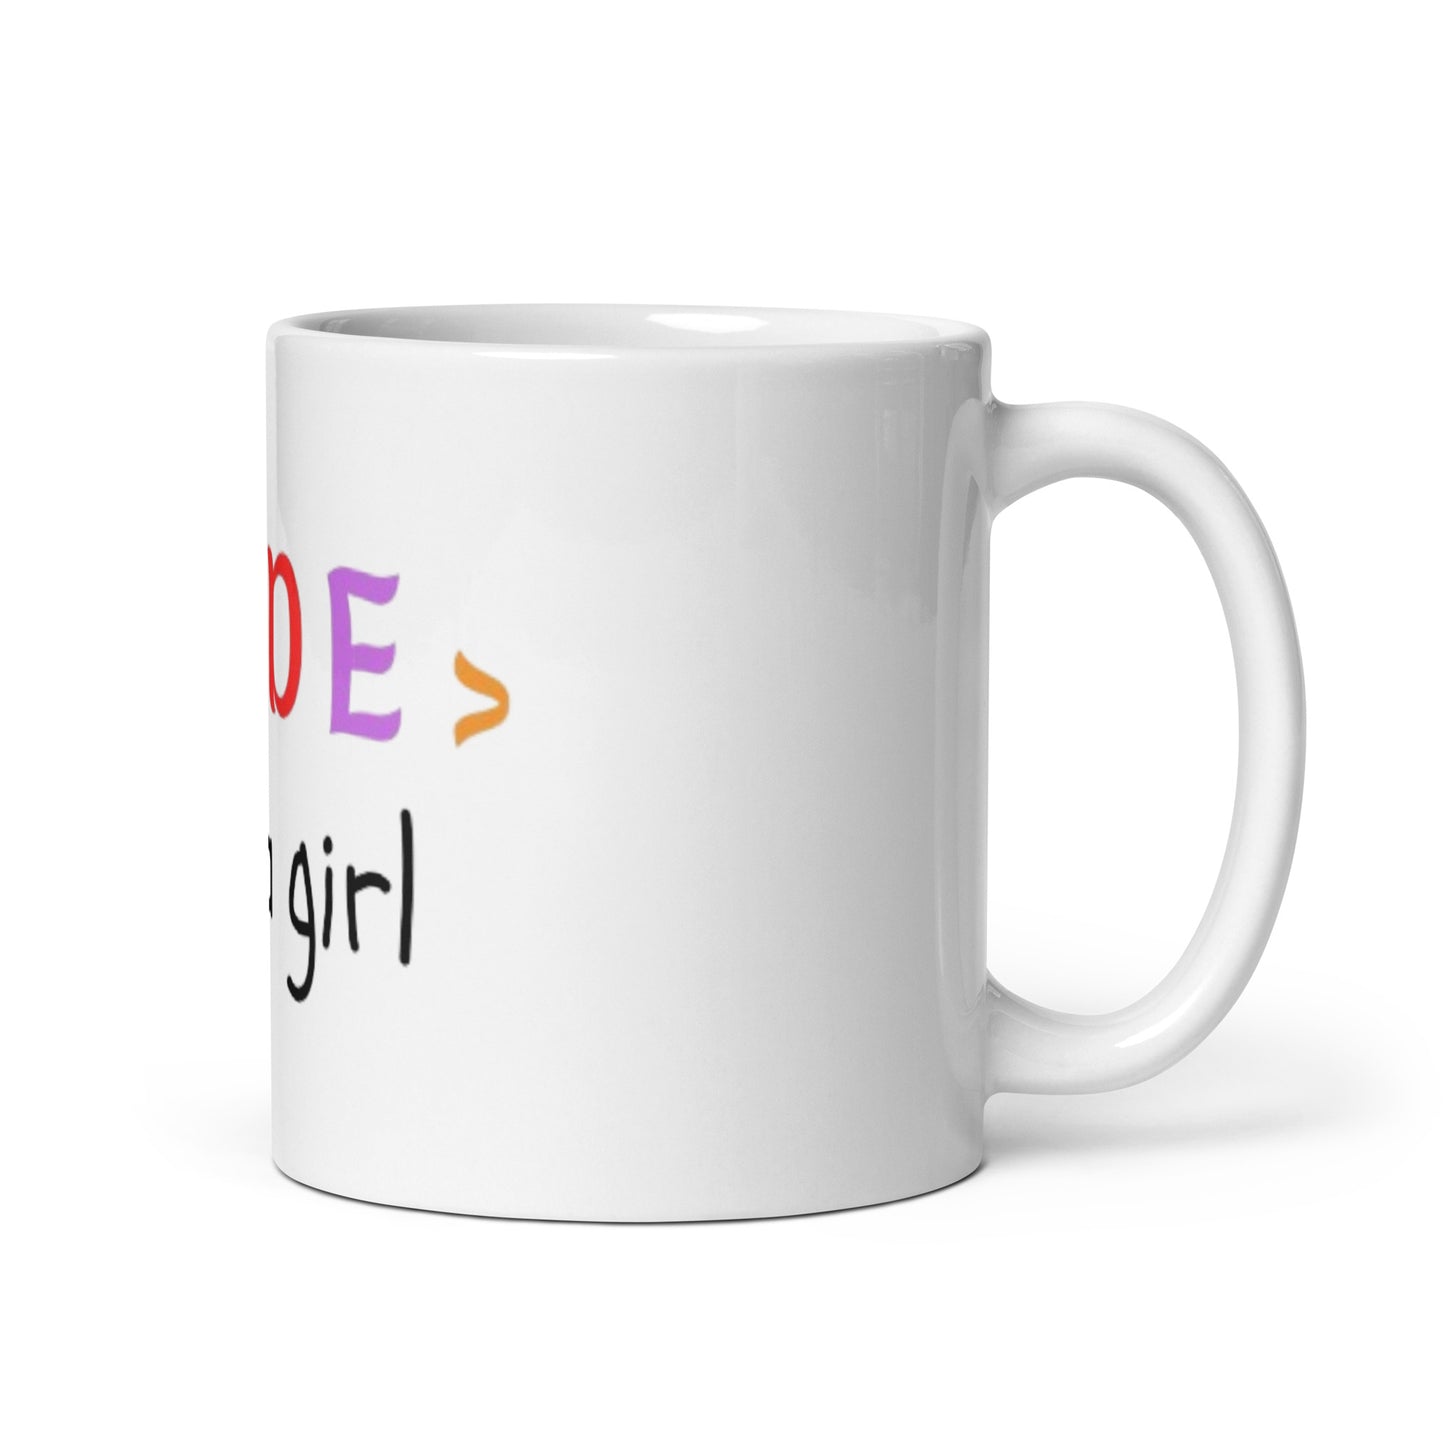 Code Like a Girl mug